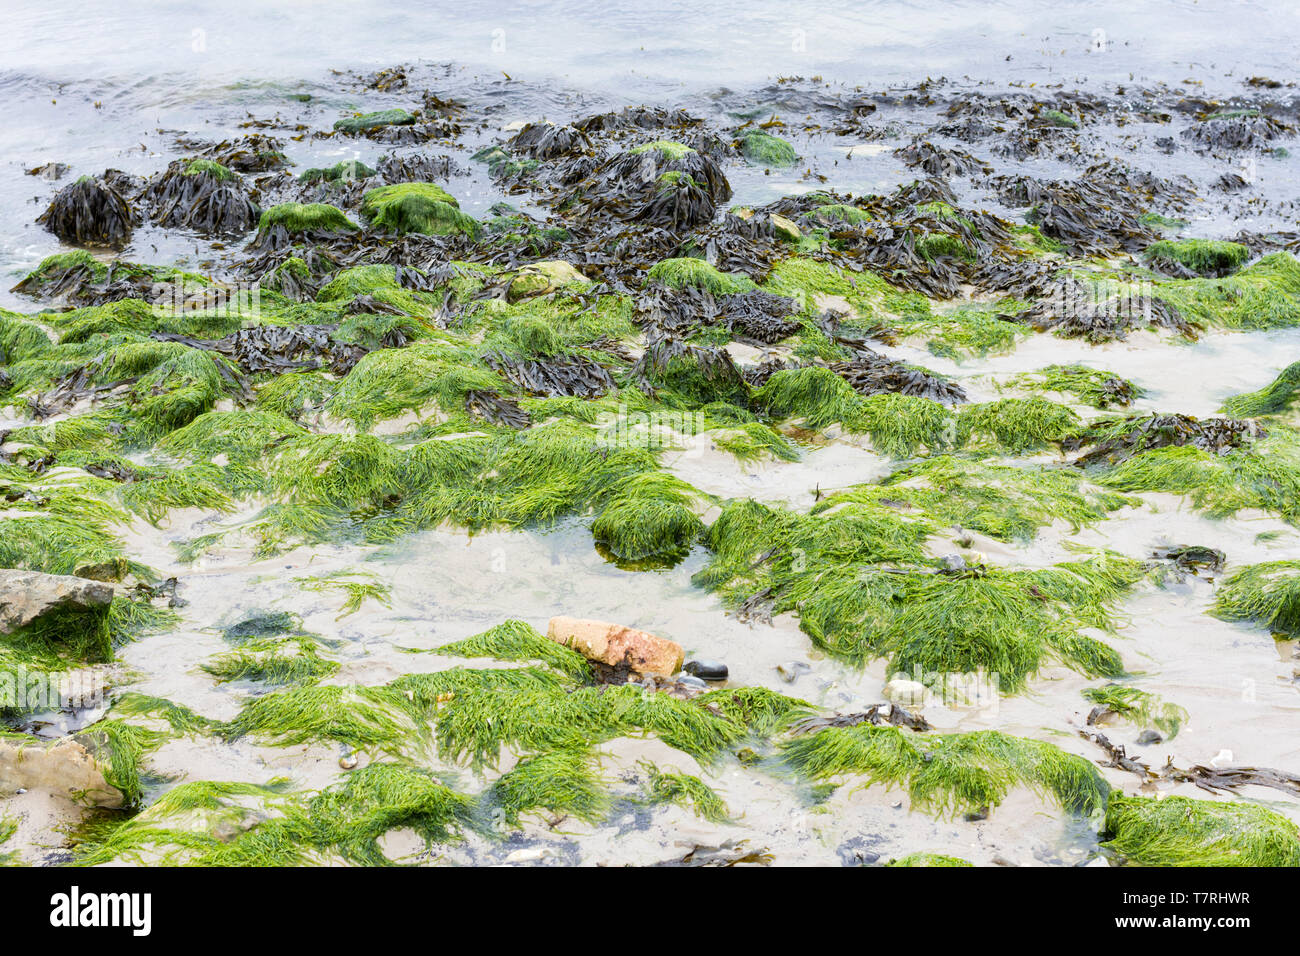 Macroalgues, algues marines, des algues sur la plage de Studland dans le Dorset, UK Banque D'Images